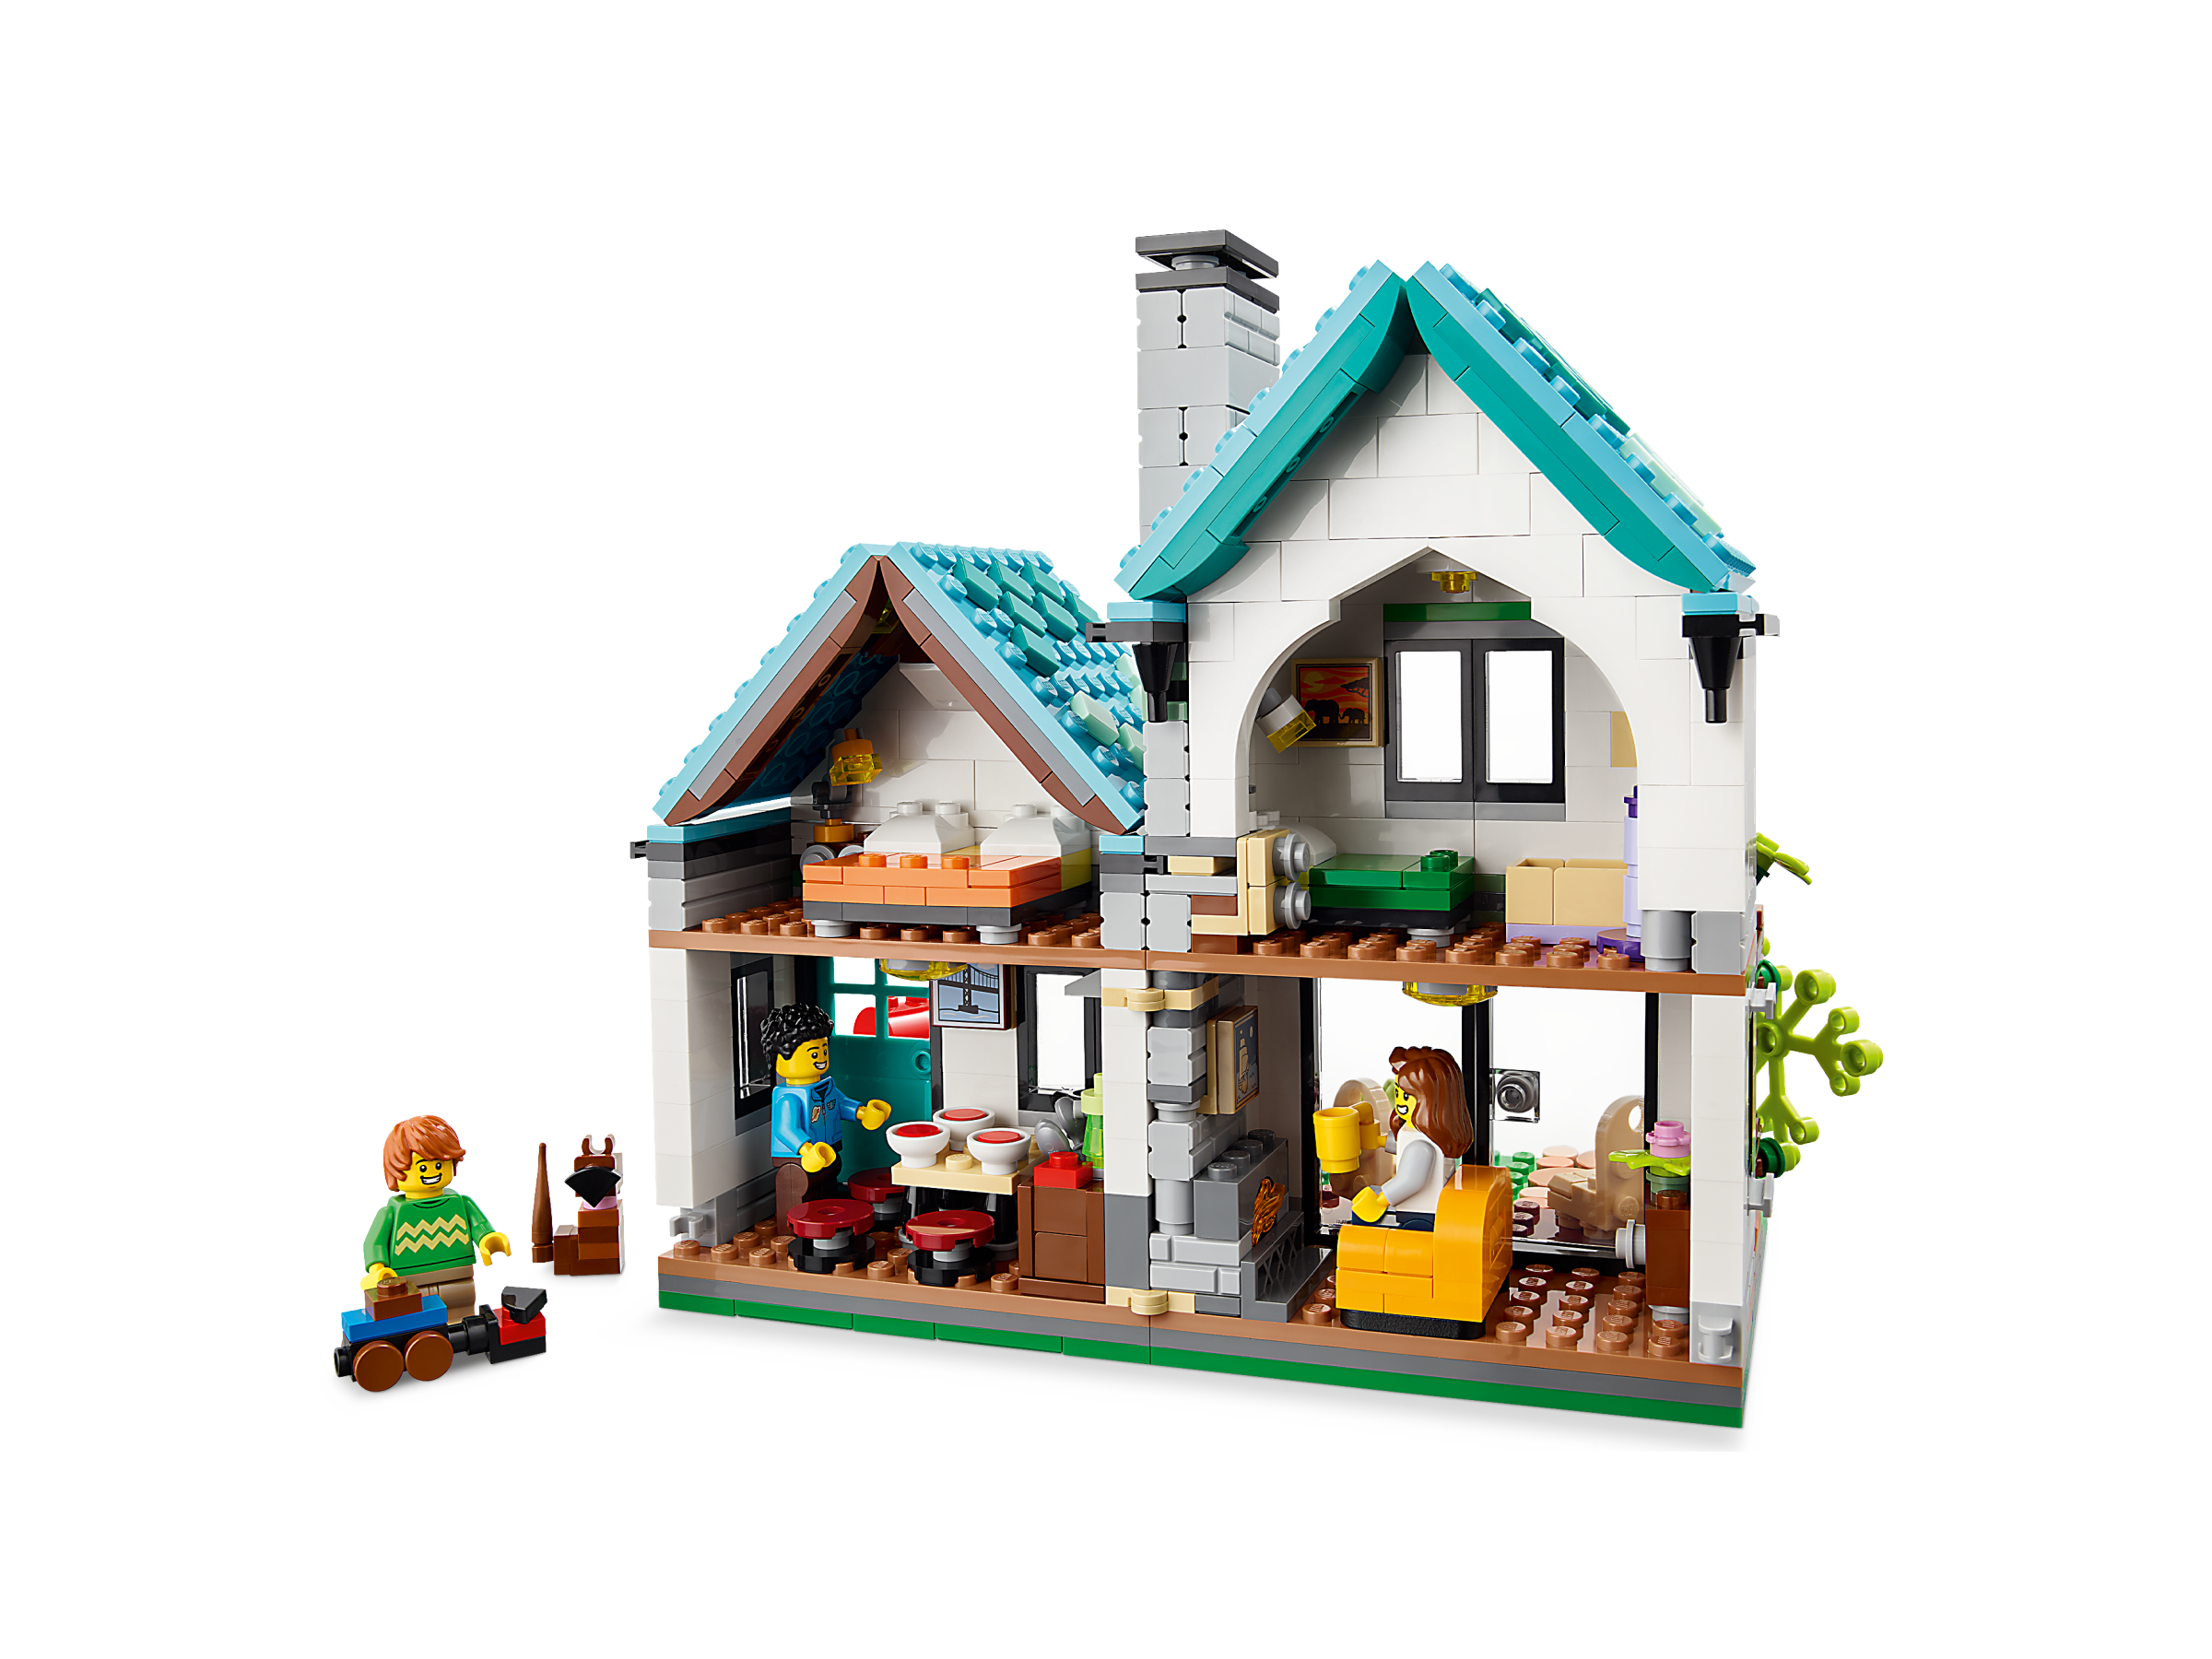 Sovesal vejspærring Faktisk Cozy House 31139 | Creator 3-in-1 | Buy online at the Official LEGO® Shop US